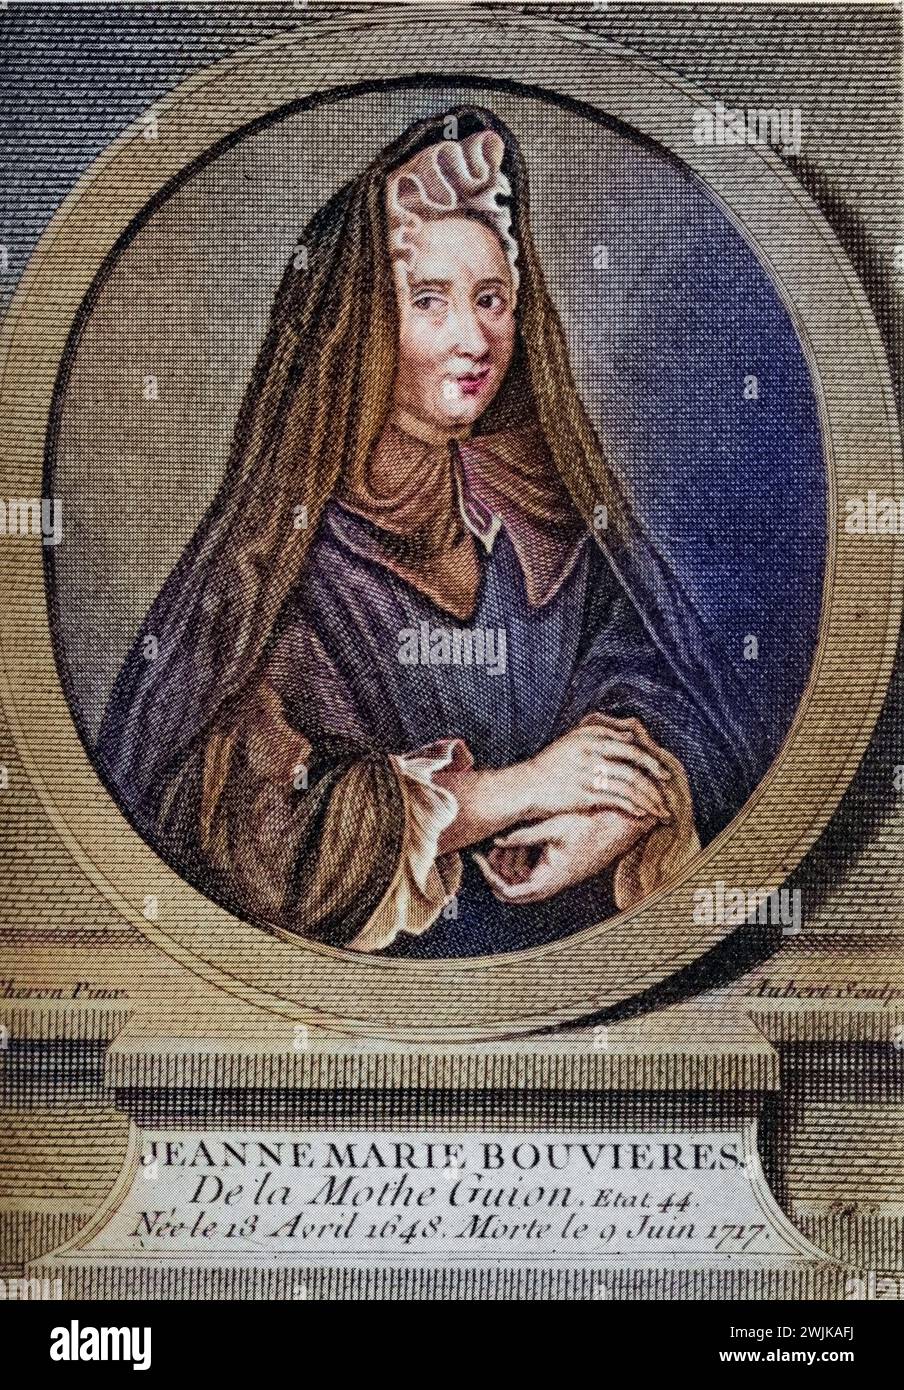 Jeanne-Marie Bouvier de La Motte Guyon (geb. 13. April 1648 in Montargis; gest. 9. Juni 1717 in Blois) war eine bedeutende römisch-katholische Mystikerin, Historisch, digital restaurierte Reproduktion von einer Vorlage aus dem 19. Jahrhundert, Record date not stated Stock Photo